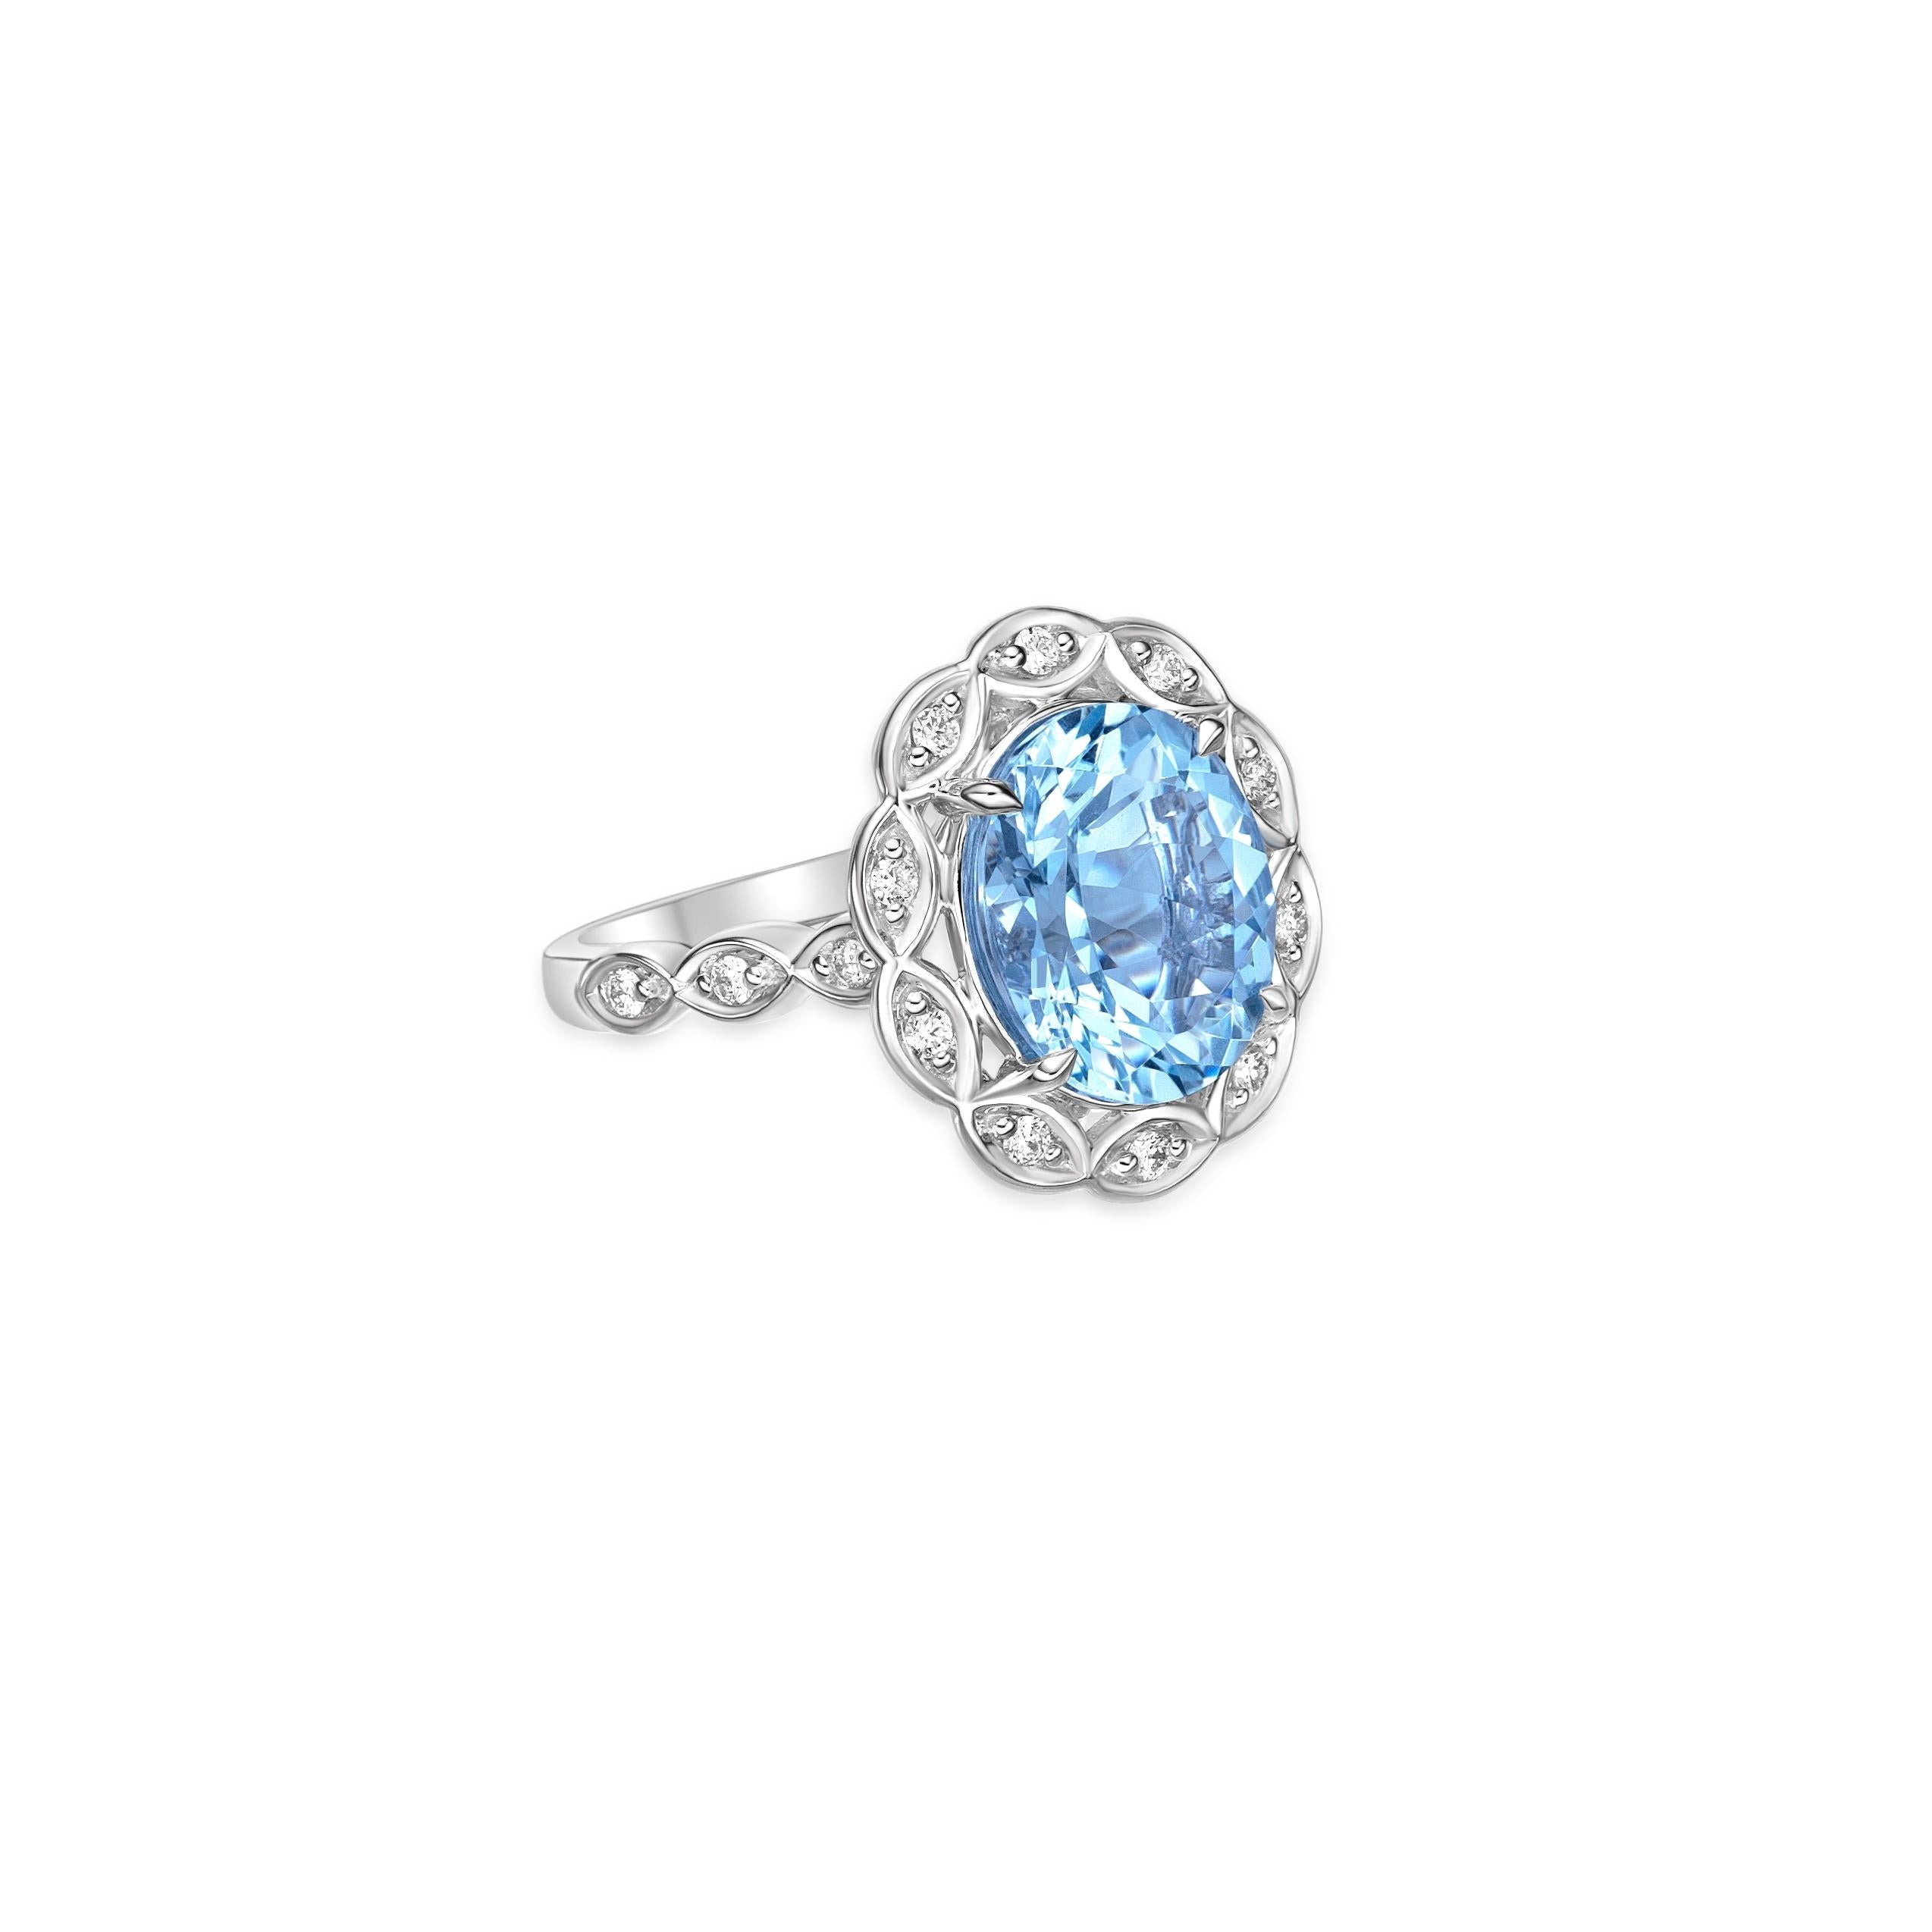 Diese Kollektion bietet eine Reihe von Aquamarinen mit einem eisblauen Farbton, der so cool ist, wie er nur sein kann! Der mit Diamanten besetzte Ring ist aus Weißgold gefertigt und präsentiert sich klassisch und elegant.
  
Aquamarin Fancy Ring aus